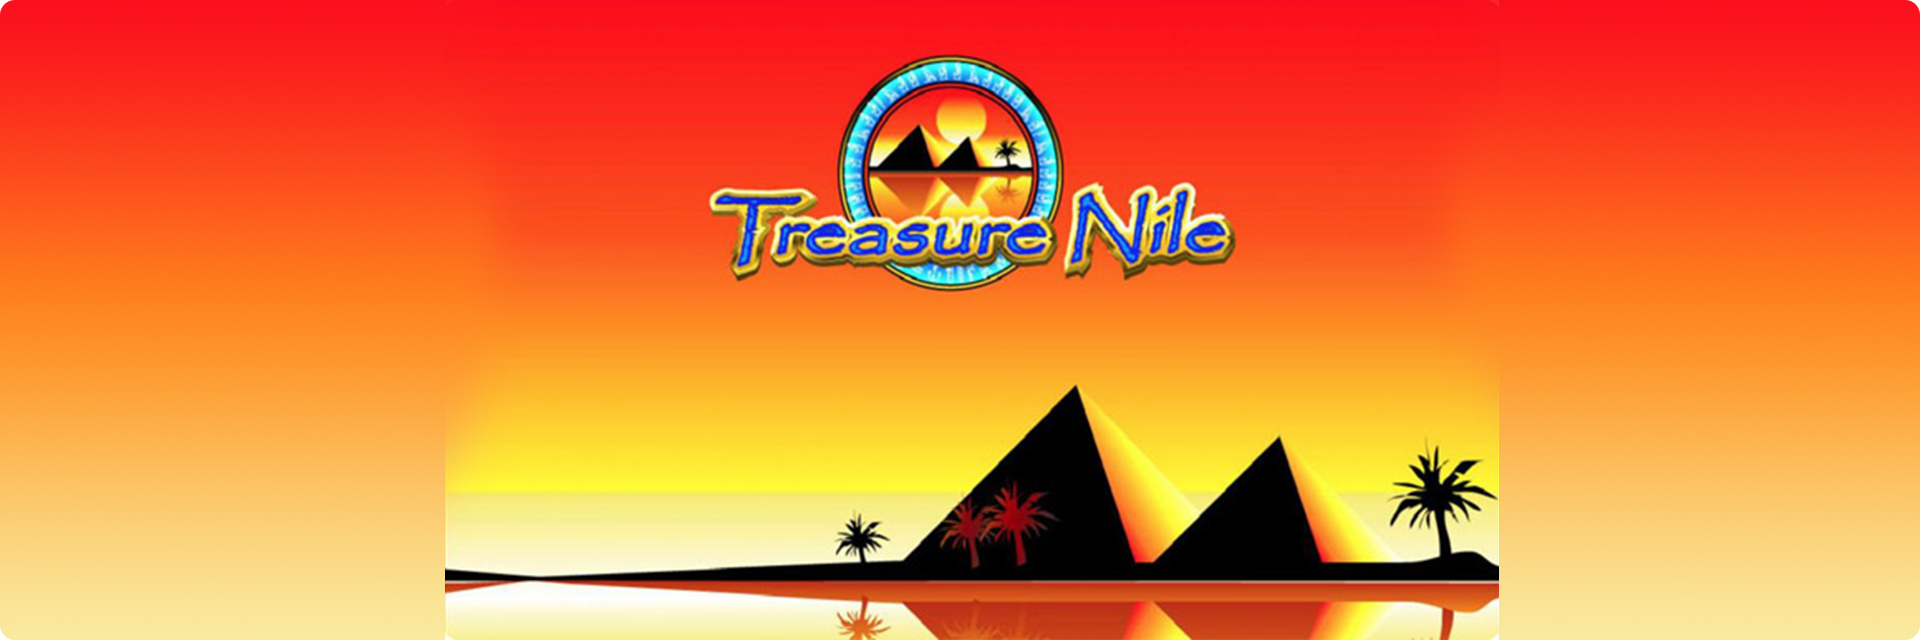 Treasure Nile slot machine.